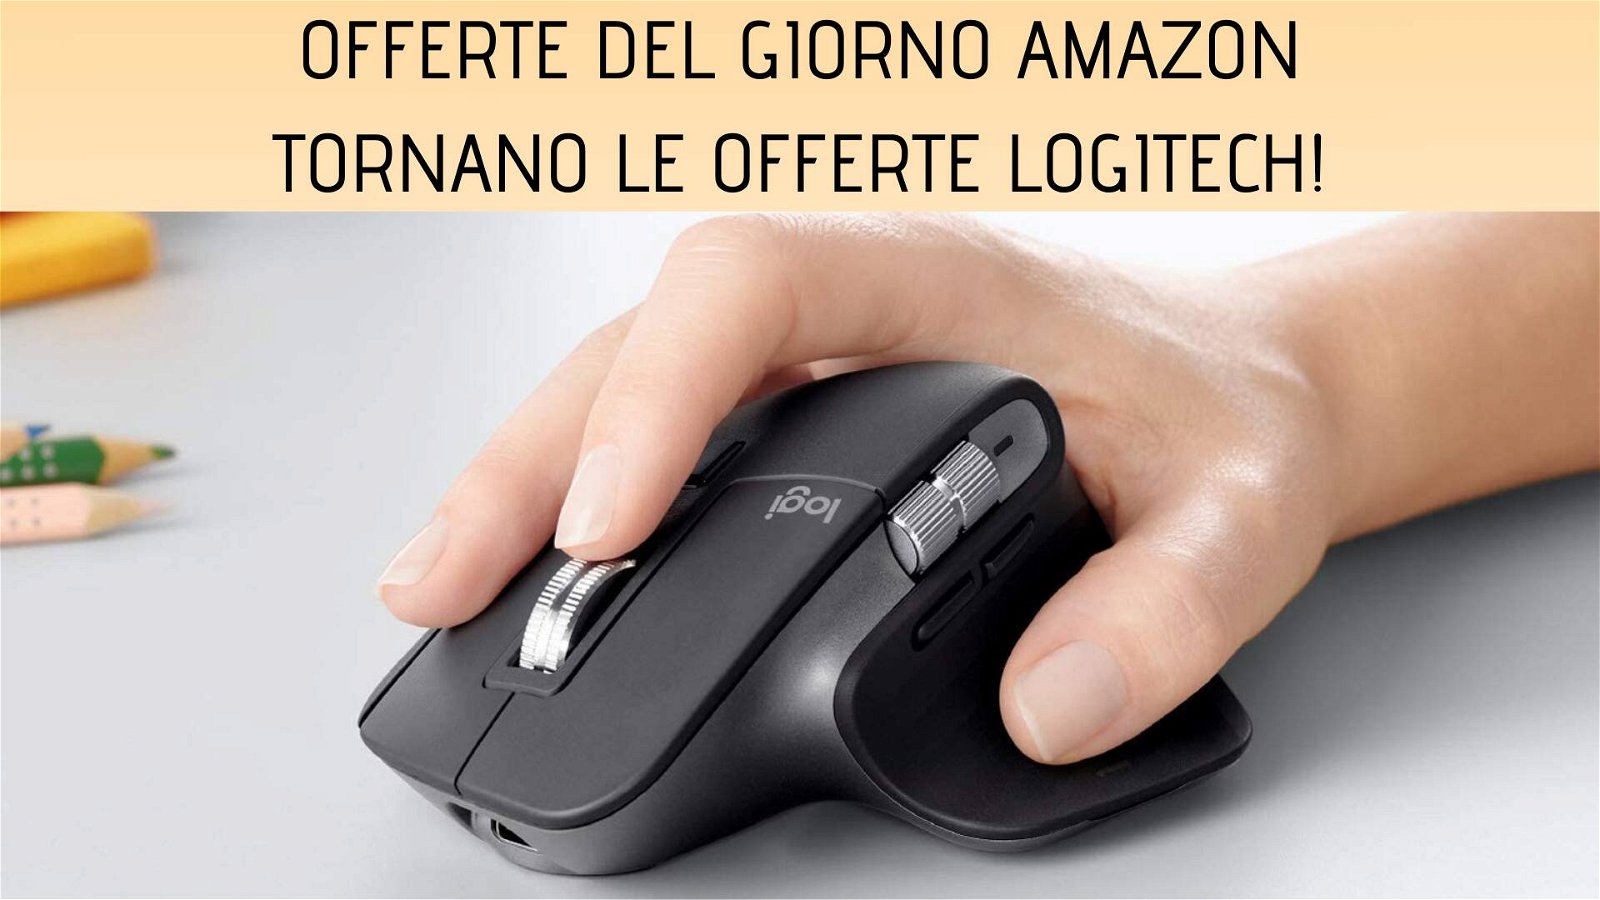 Immagine di Offerte del giorno Amazon: mouse Logitech MX Master 3 scontato del 30%!